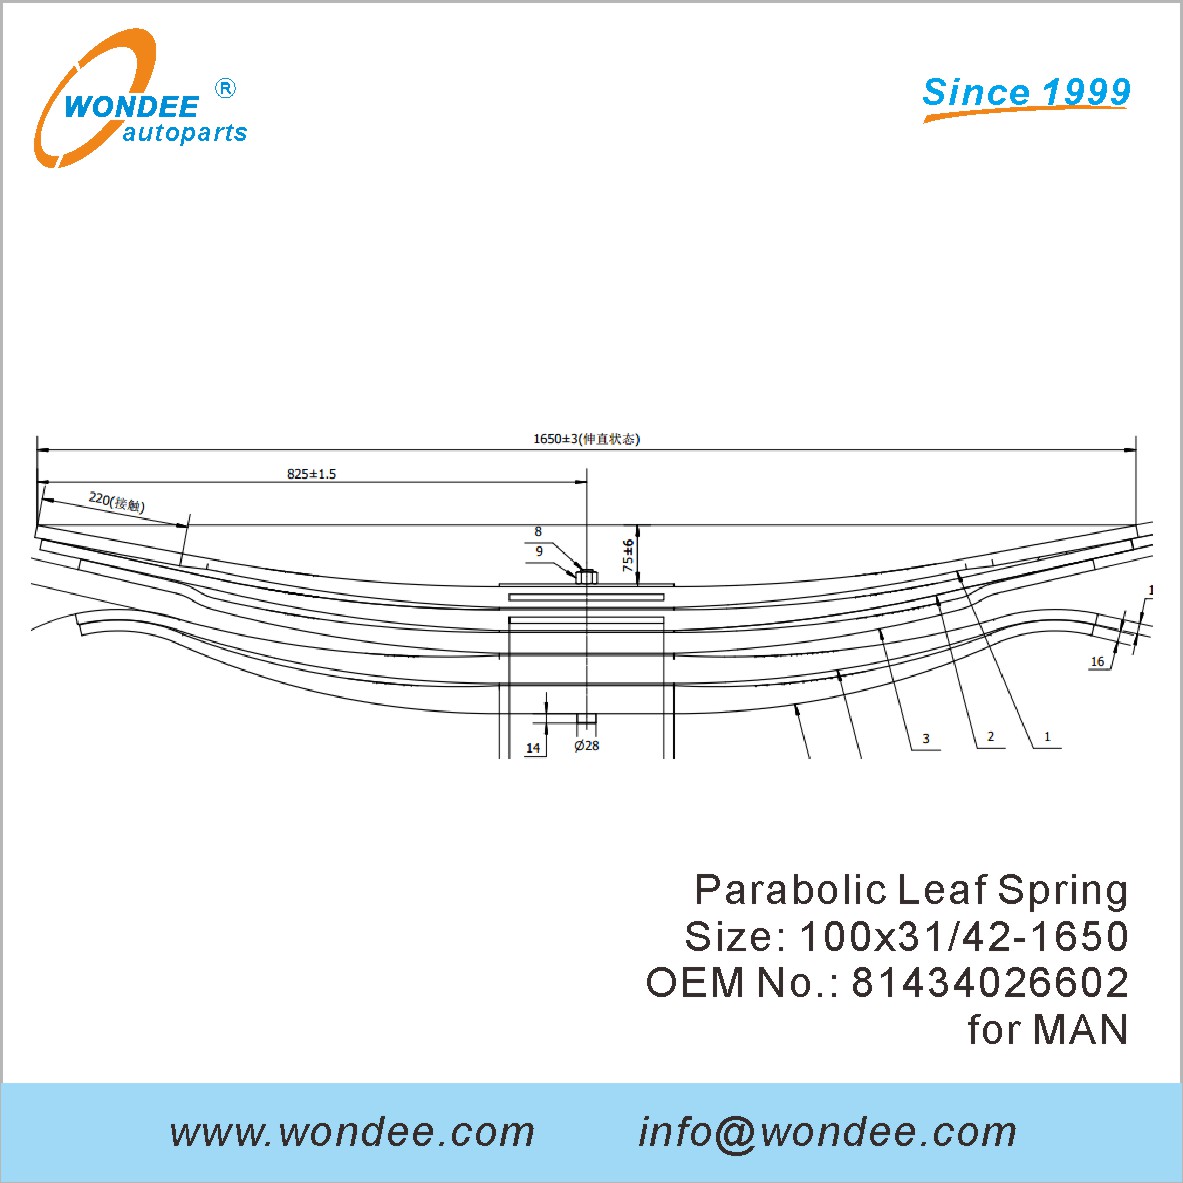 WONDEE heavy duty parabolic Leaf Spring OEM 81434026602 for MAN